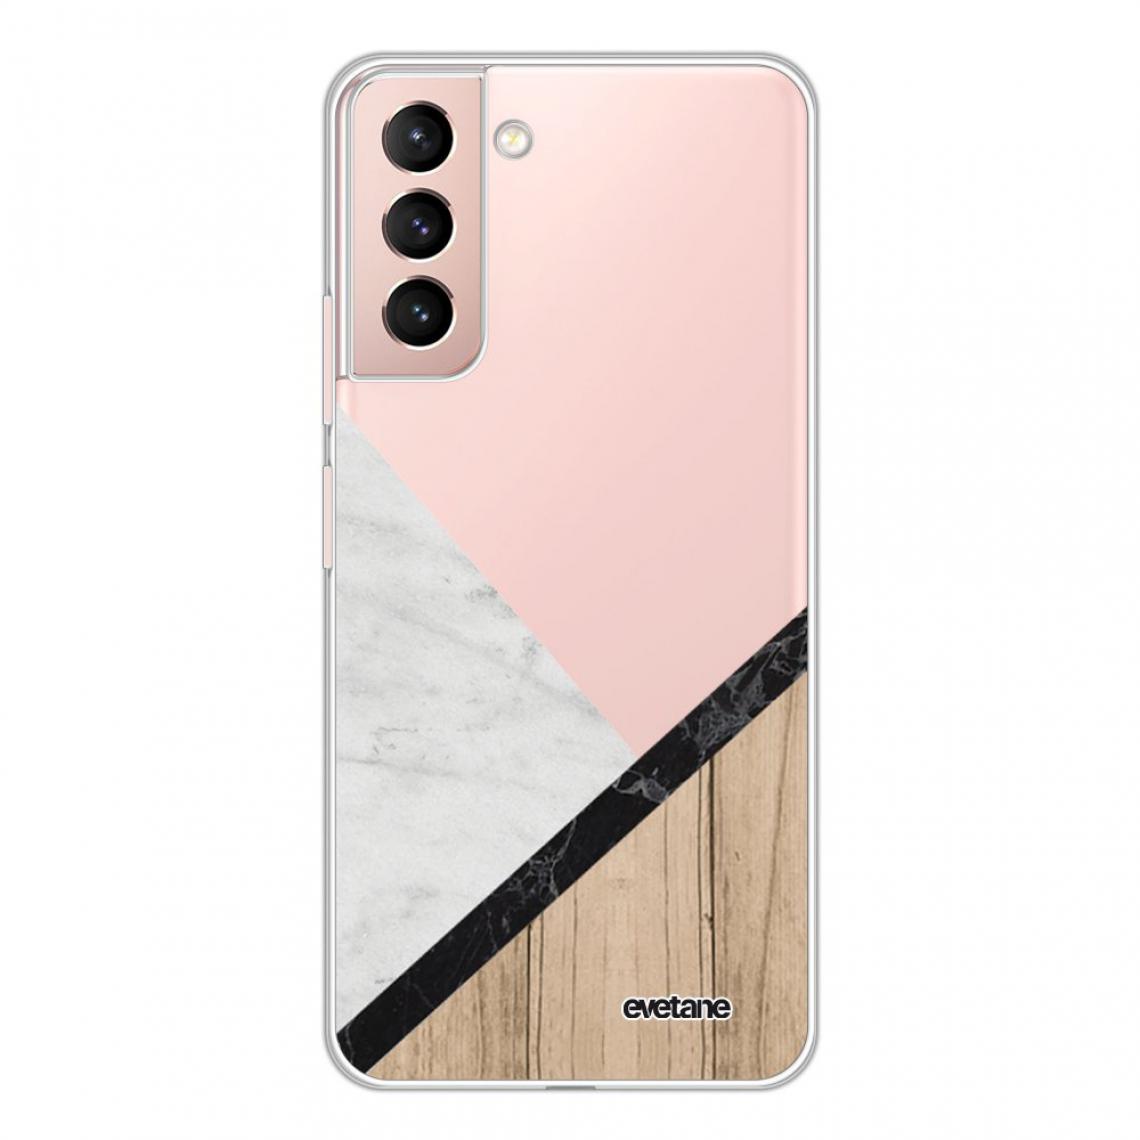 Evetane - Coque Samsung Galaxy S21 Plus 5G souple silicone transparente - Coque, étui smartphone